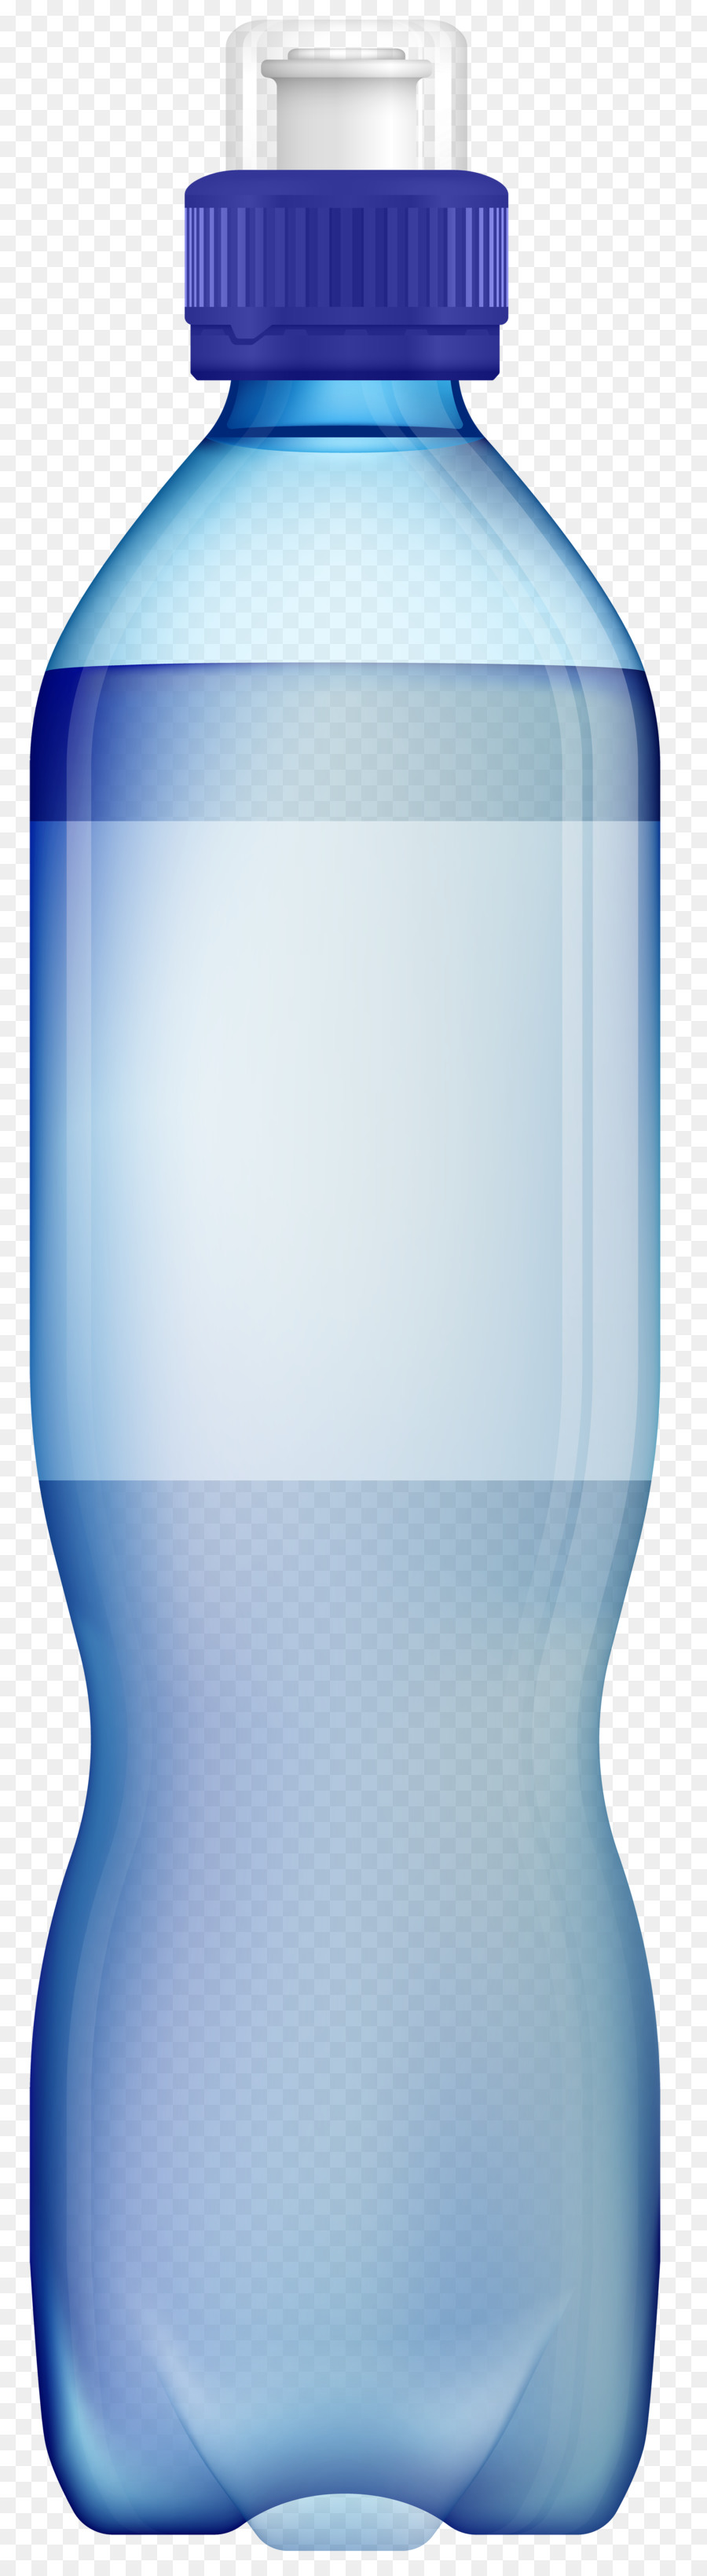 Clip art Bottiglie di Acqua in Bottiglia di acqua bottiglia di Plastica - bottiglia